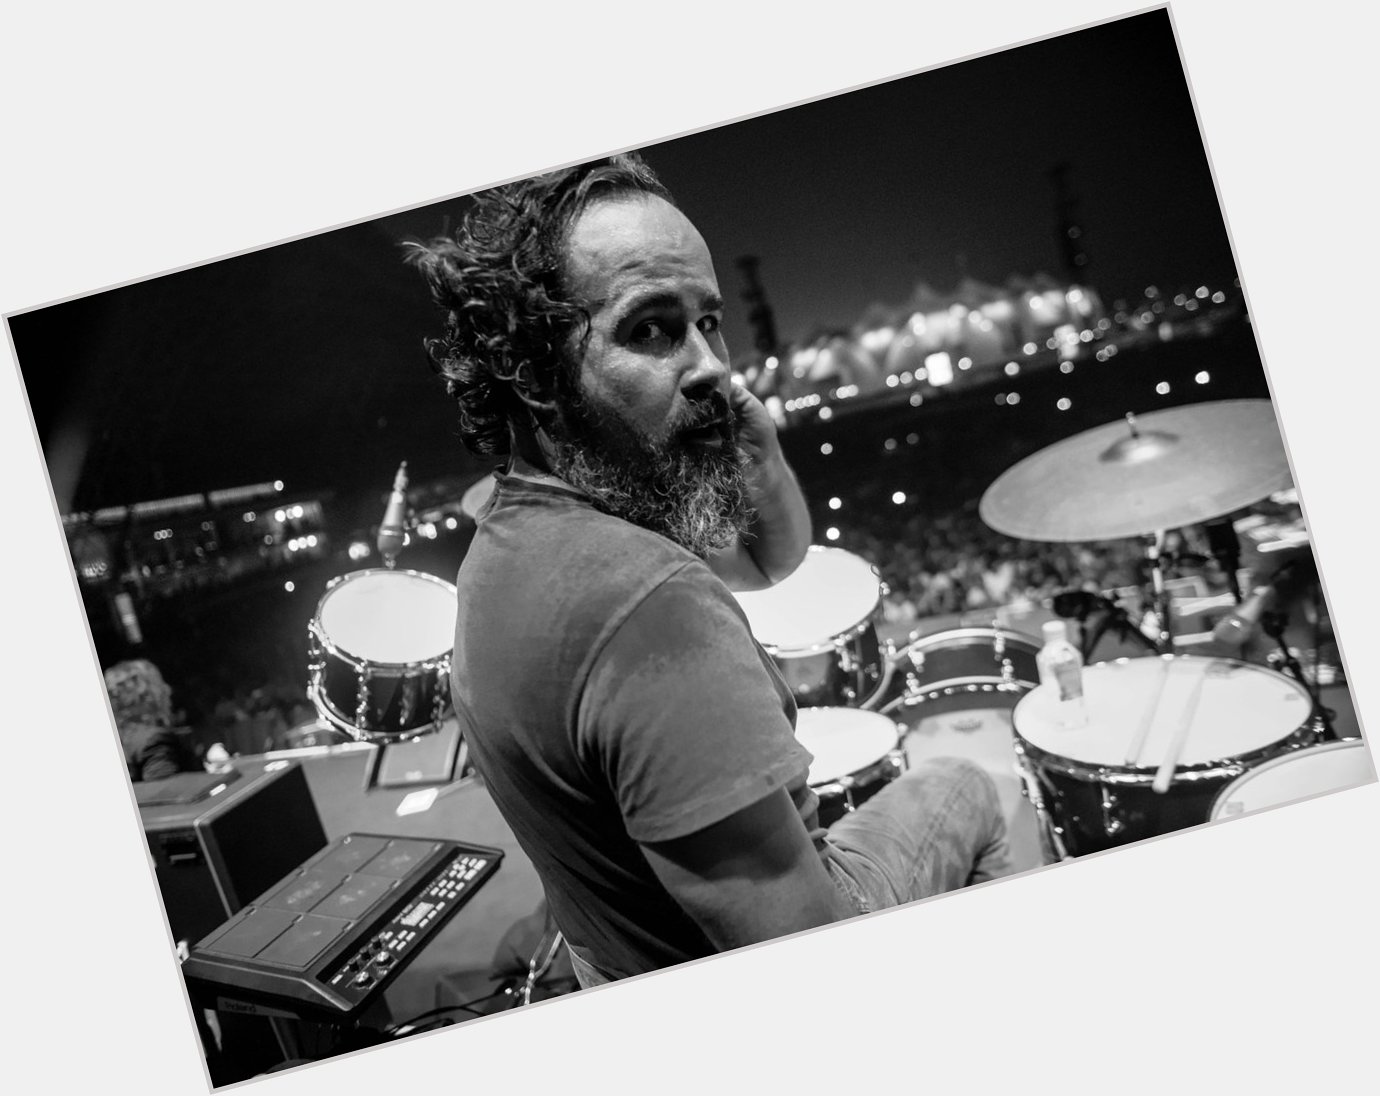 Hoy, 15/02, cumple años el legendario baterista de the killers Ronnie Vannucci Jr.
HAPPY BIRTHDAY TIME MACHINE 